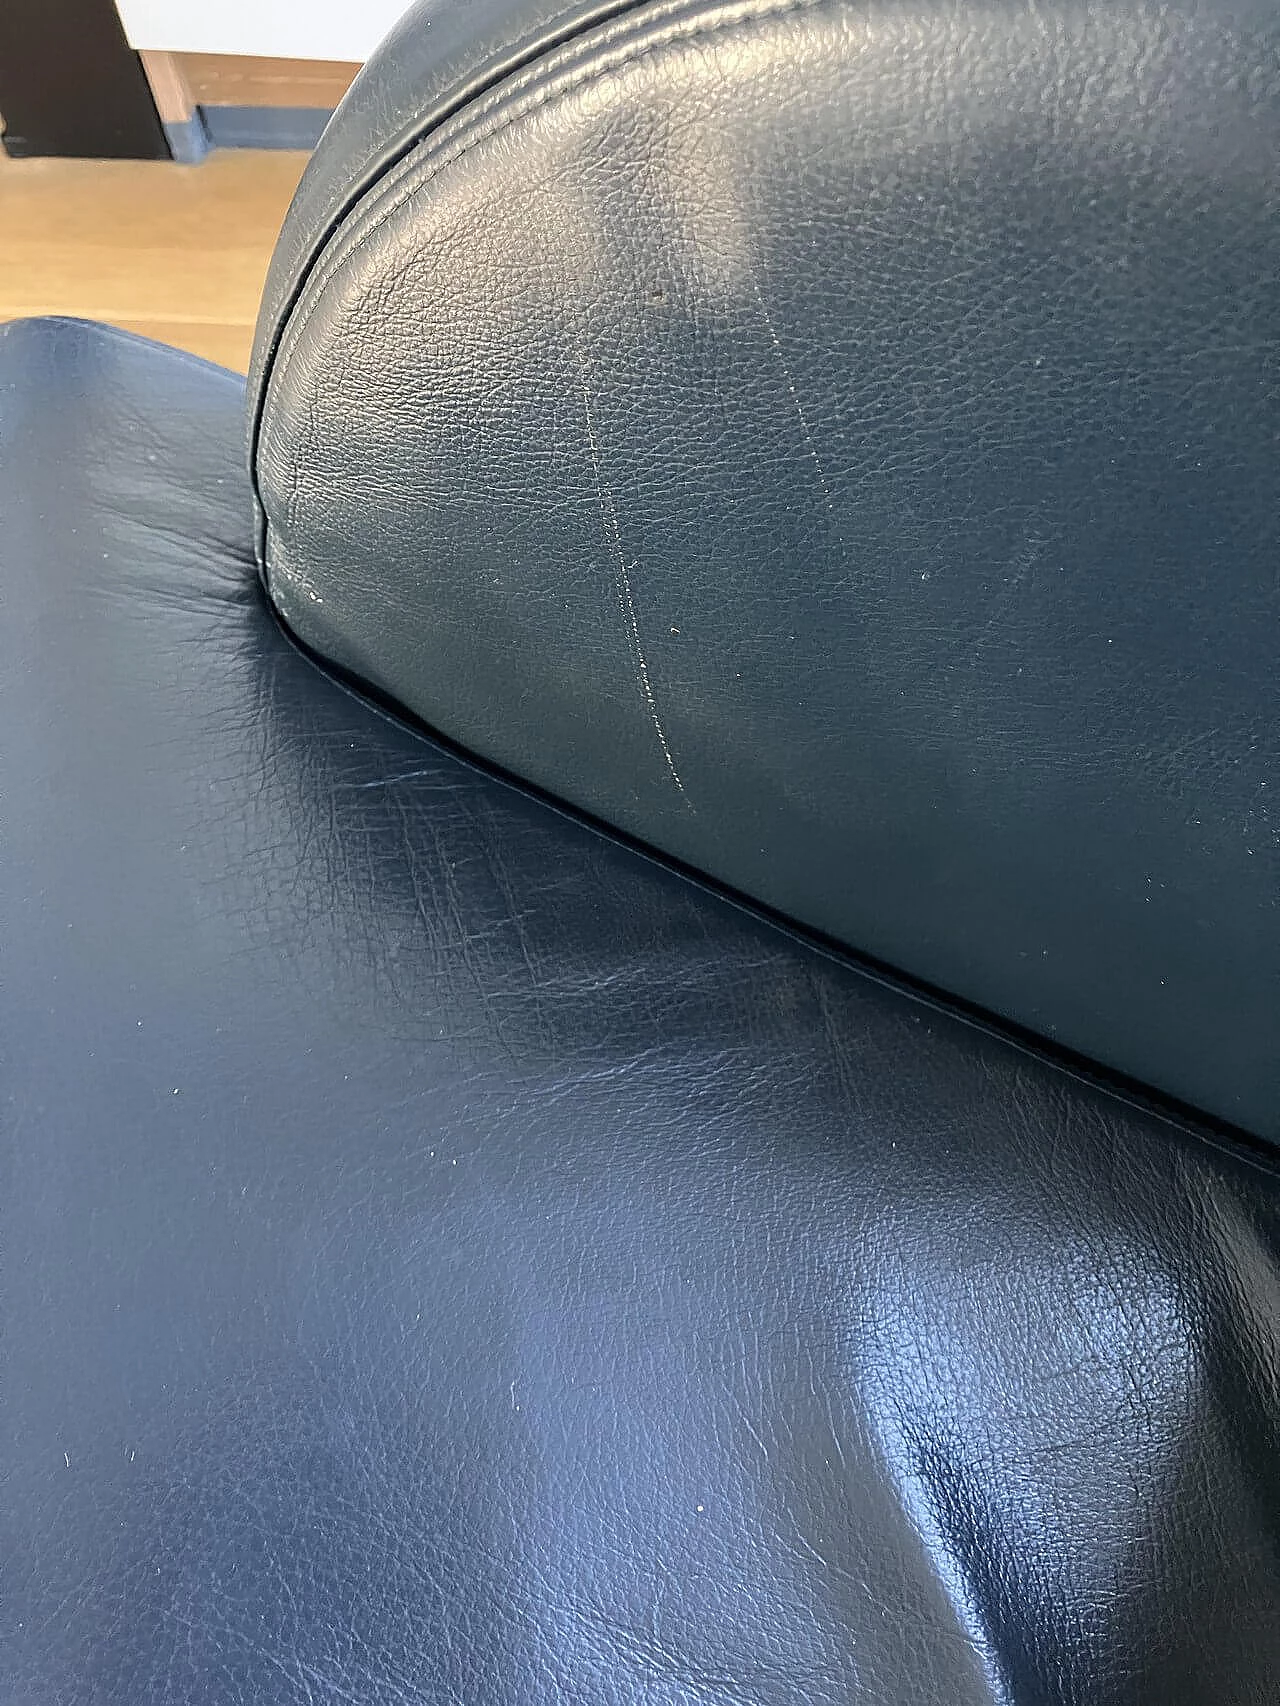 Oriente armchair in dark blue Maxalto leather by Antonio Citterio for B&B Italia 8